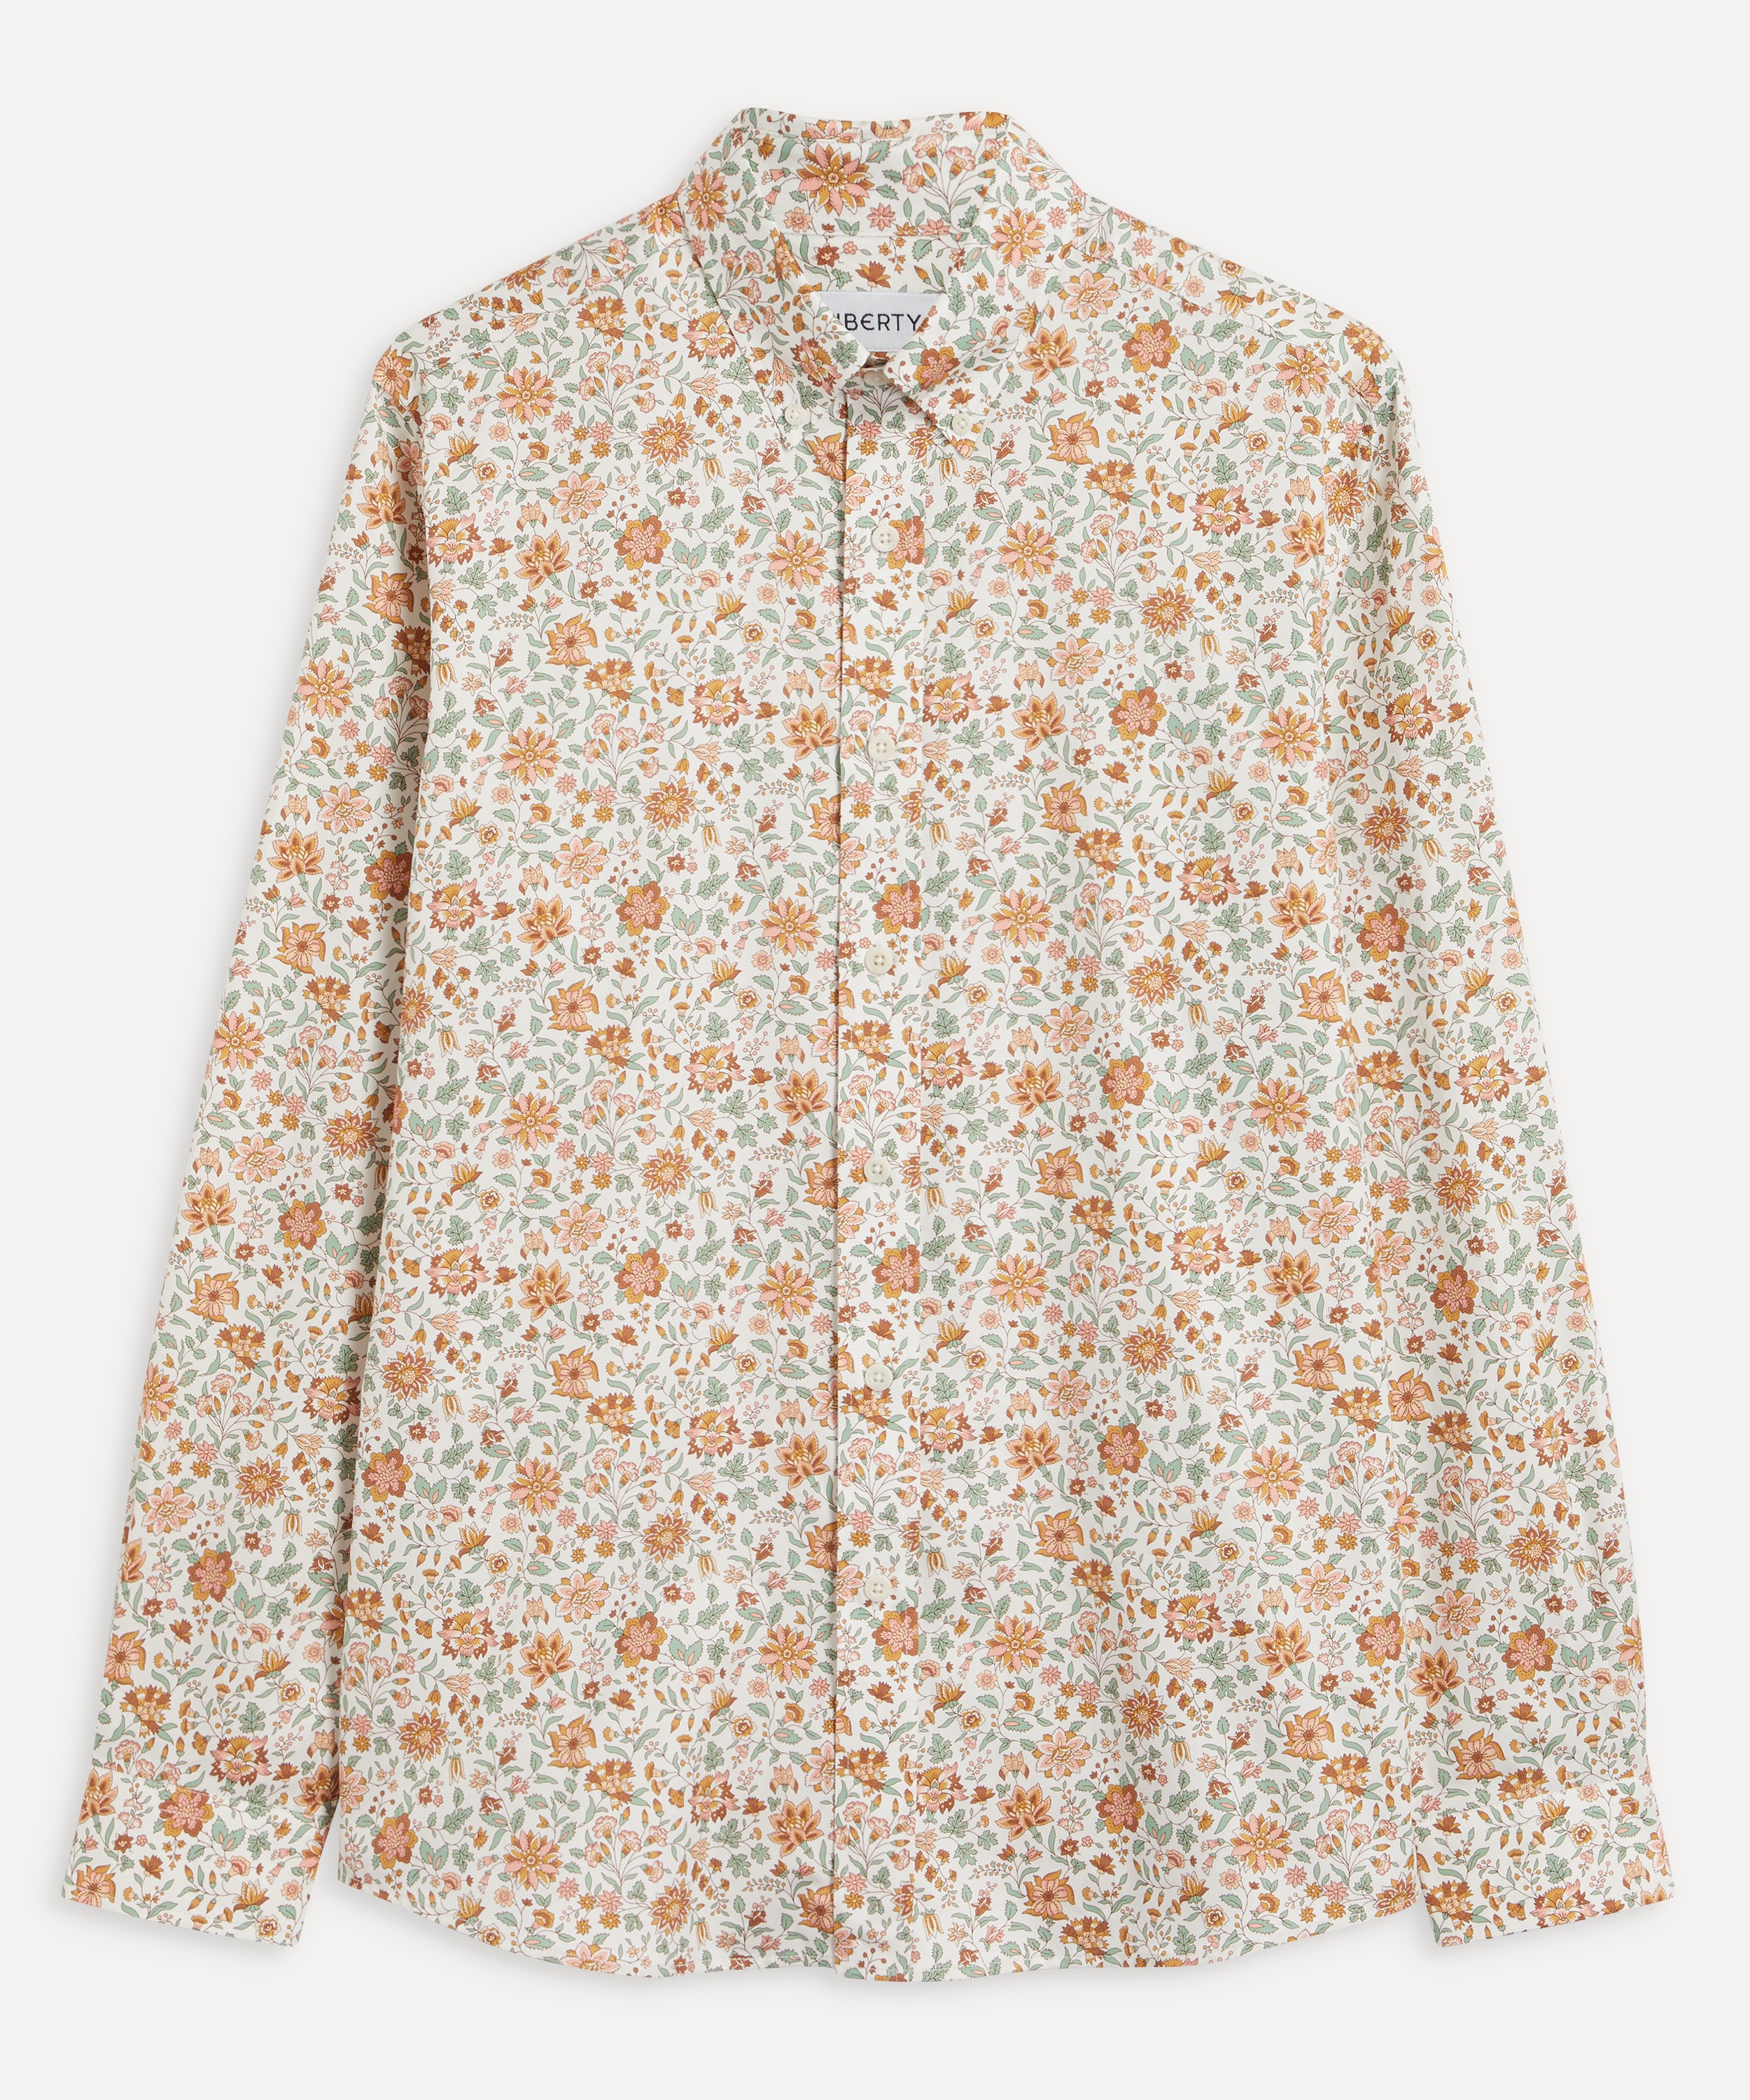 Broadwick Liberty Fabric Floral Print Men's Button-Down Shirt – Merc